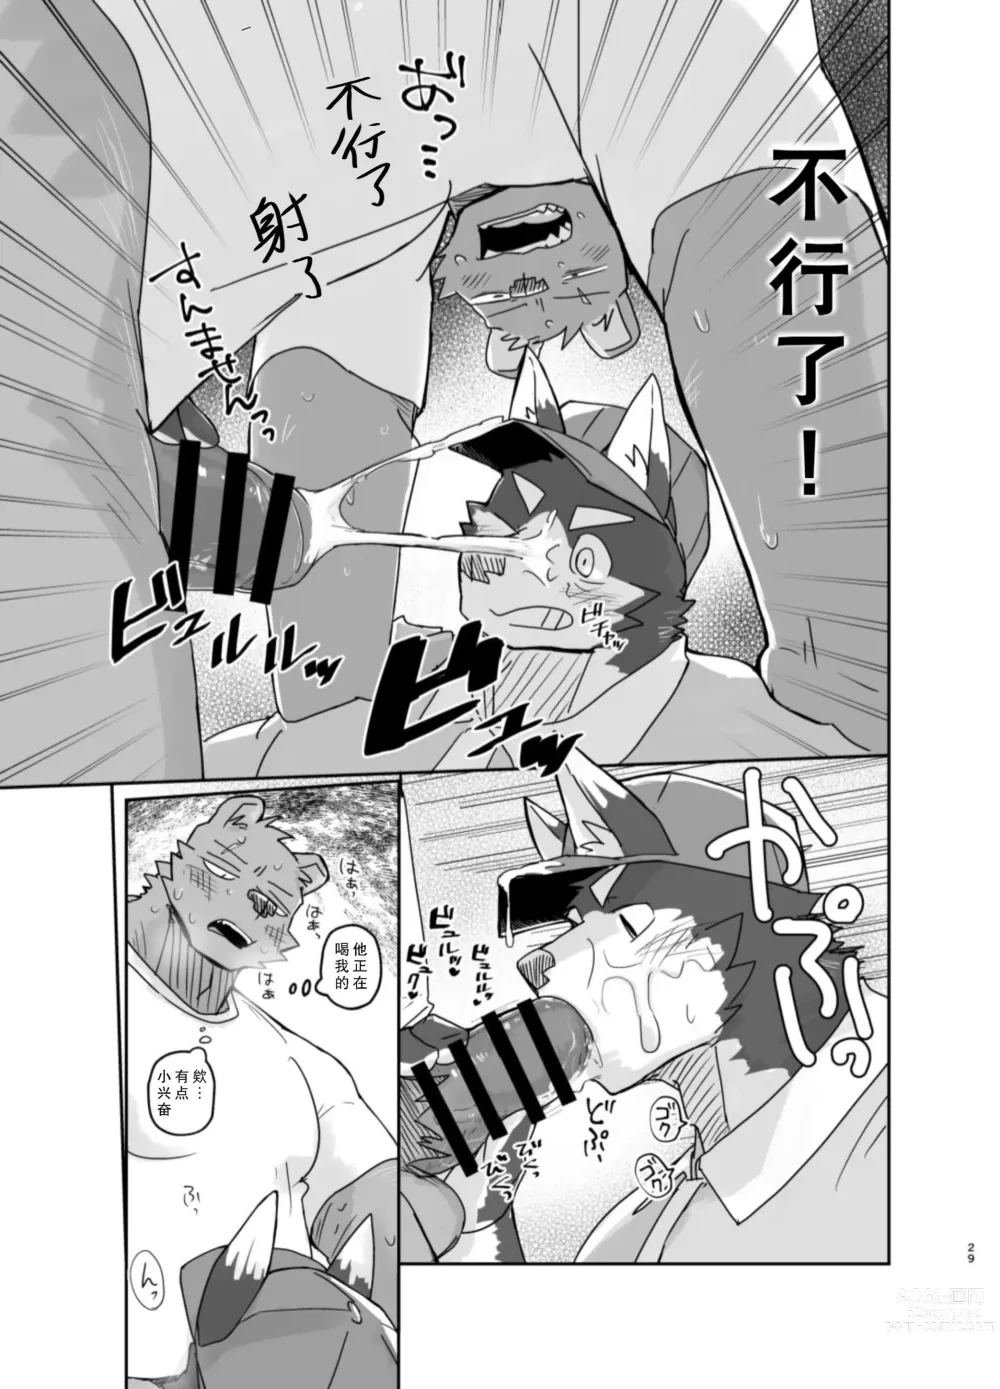 Page 29 of doujinshi 搬家的十分钟服务